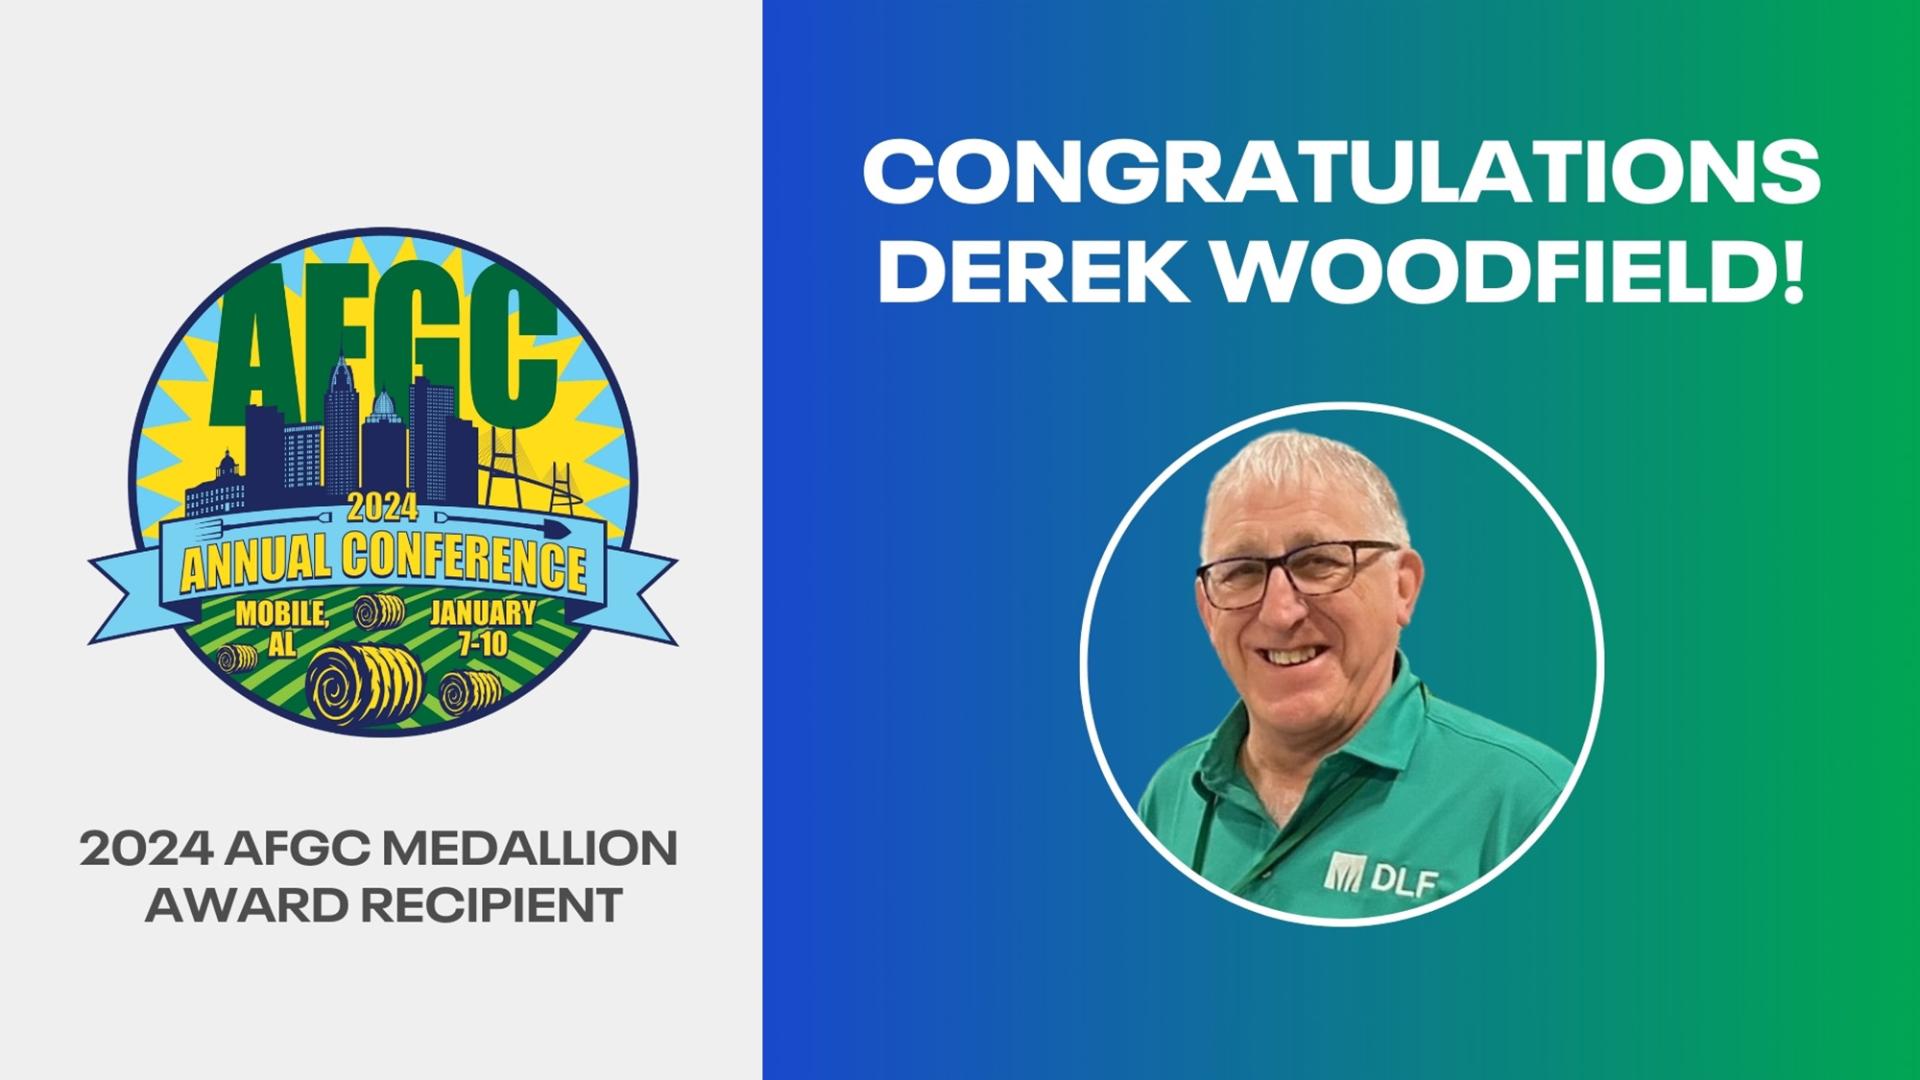 DLF's Derek Woodfield Receives AFGC Medallion Award 